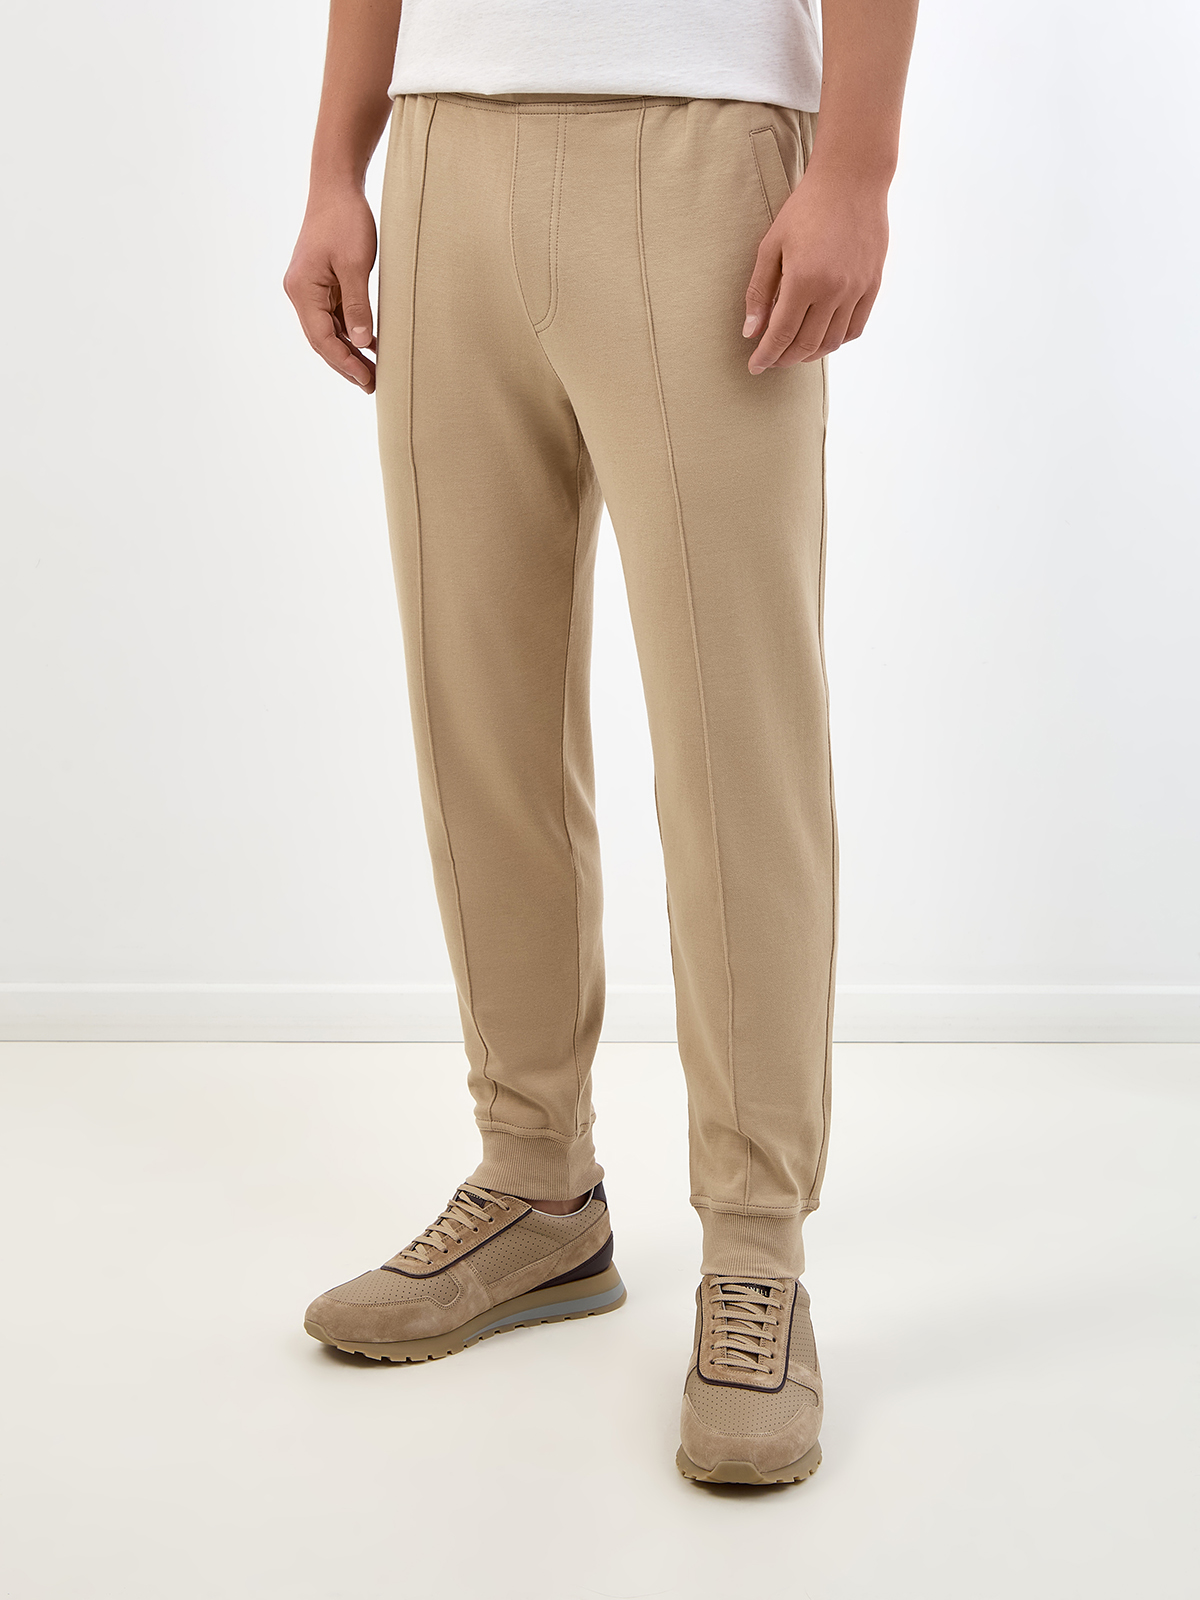 Хлопковые брюки-джоггеры Travelwear с поясом на кулиске BRUNELLO CUCINELLI, цвет бежевый, размер 50;54;48 - фото 3